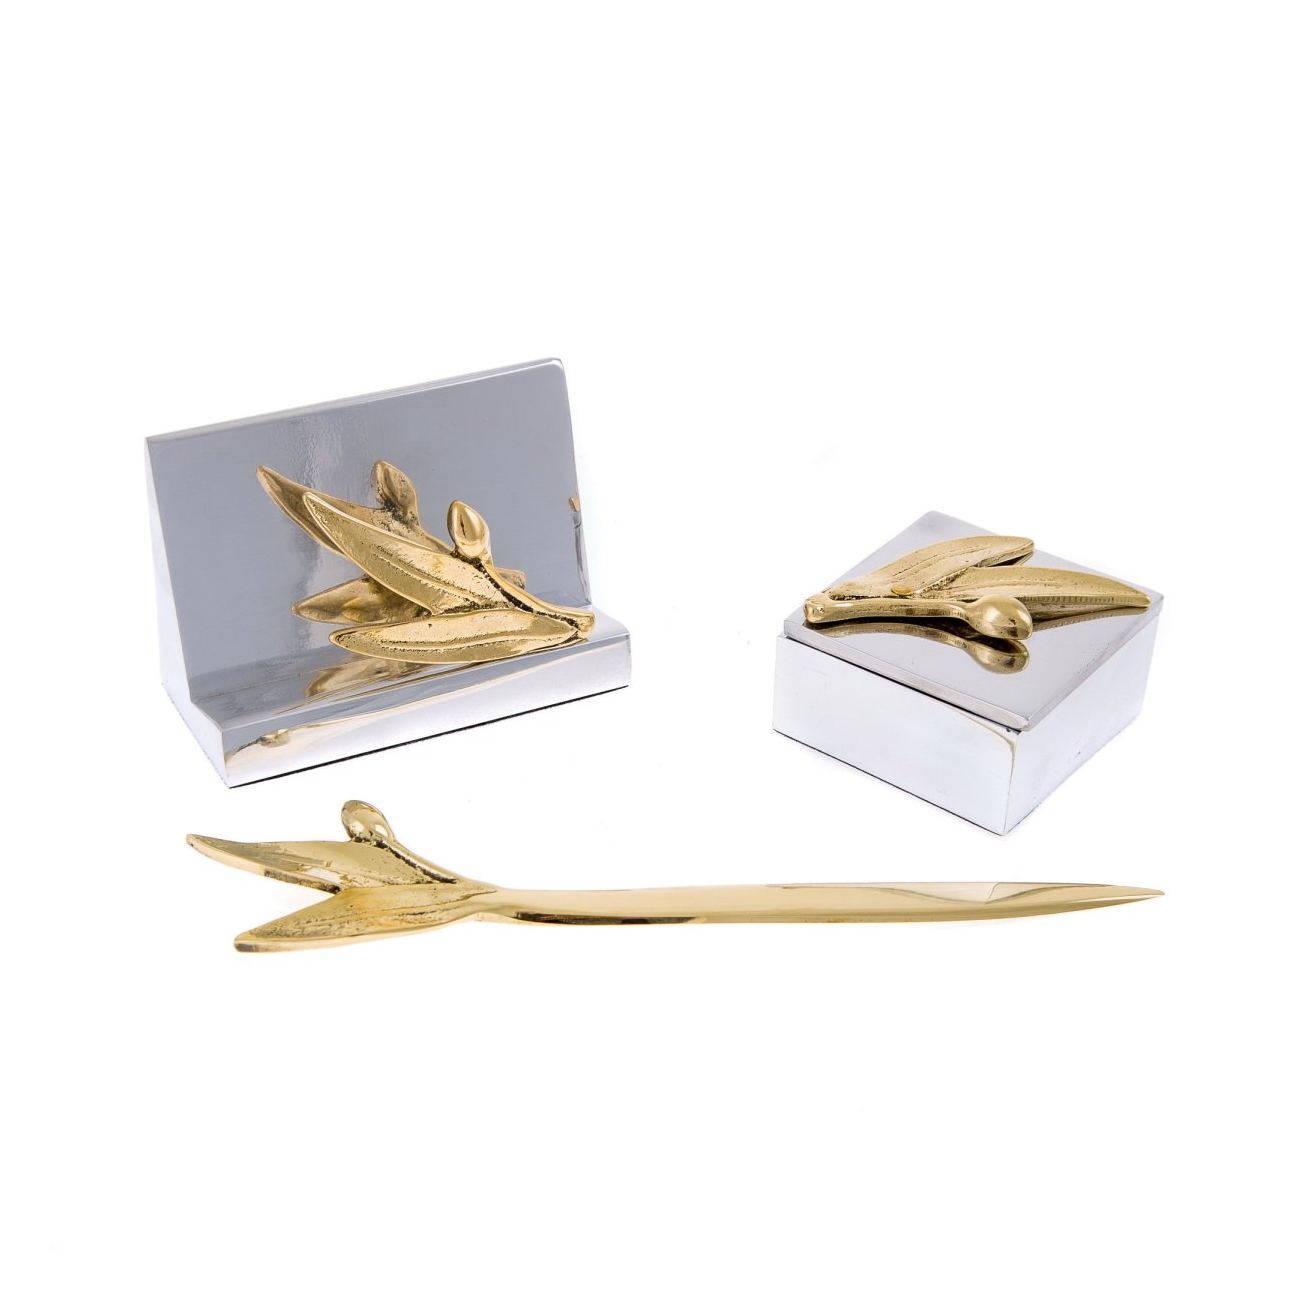 Desk Accessories Set of 3 - Olive Branch Design - Handmade Solid Metal -  Decorative Storage Box, Business Card Holder & Letter Opener